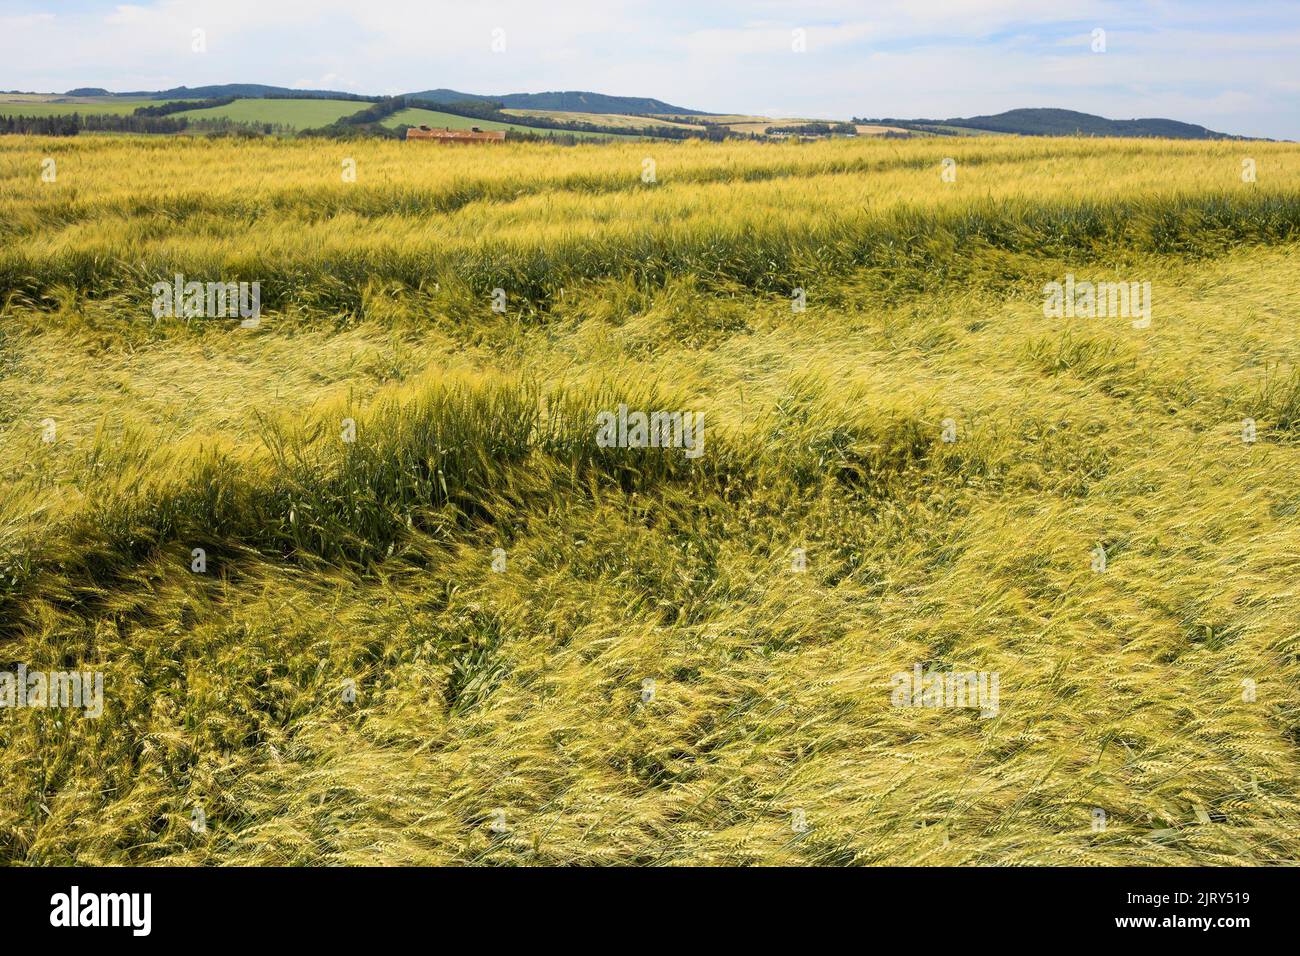 Un raccolto di grano appiattito da una tempesta di pioggia e grandine danni su un campo agricolo prateria in estate, Alberta centrale, Canada. Il raccolto è ancora Harvestable. Foto Stock